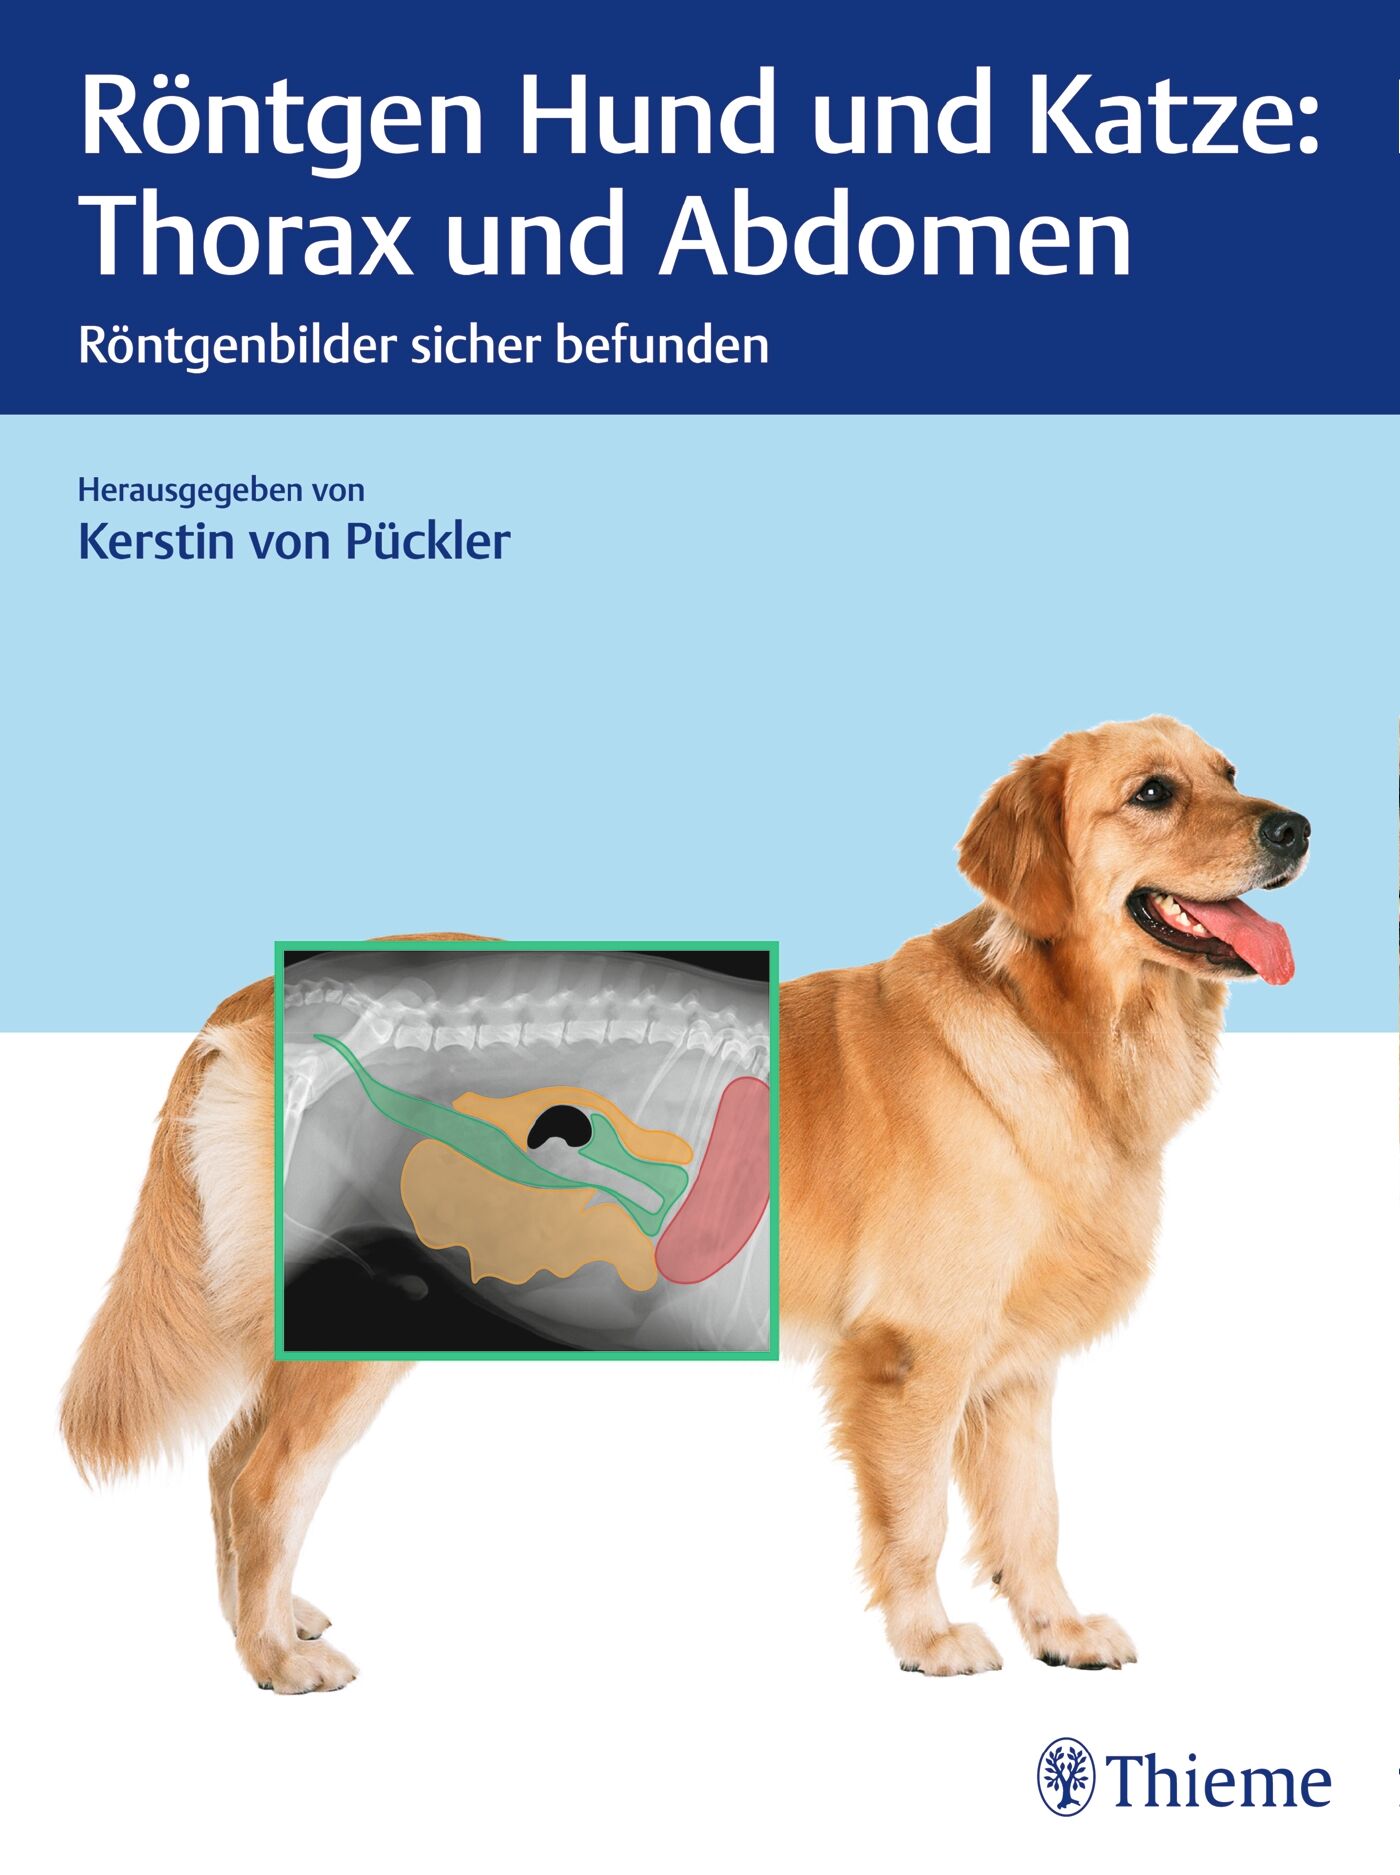 Röntgen Hund und Katze: Thorax und Abdomen, 9783132425385